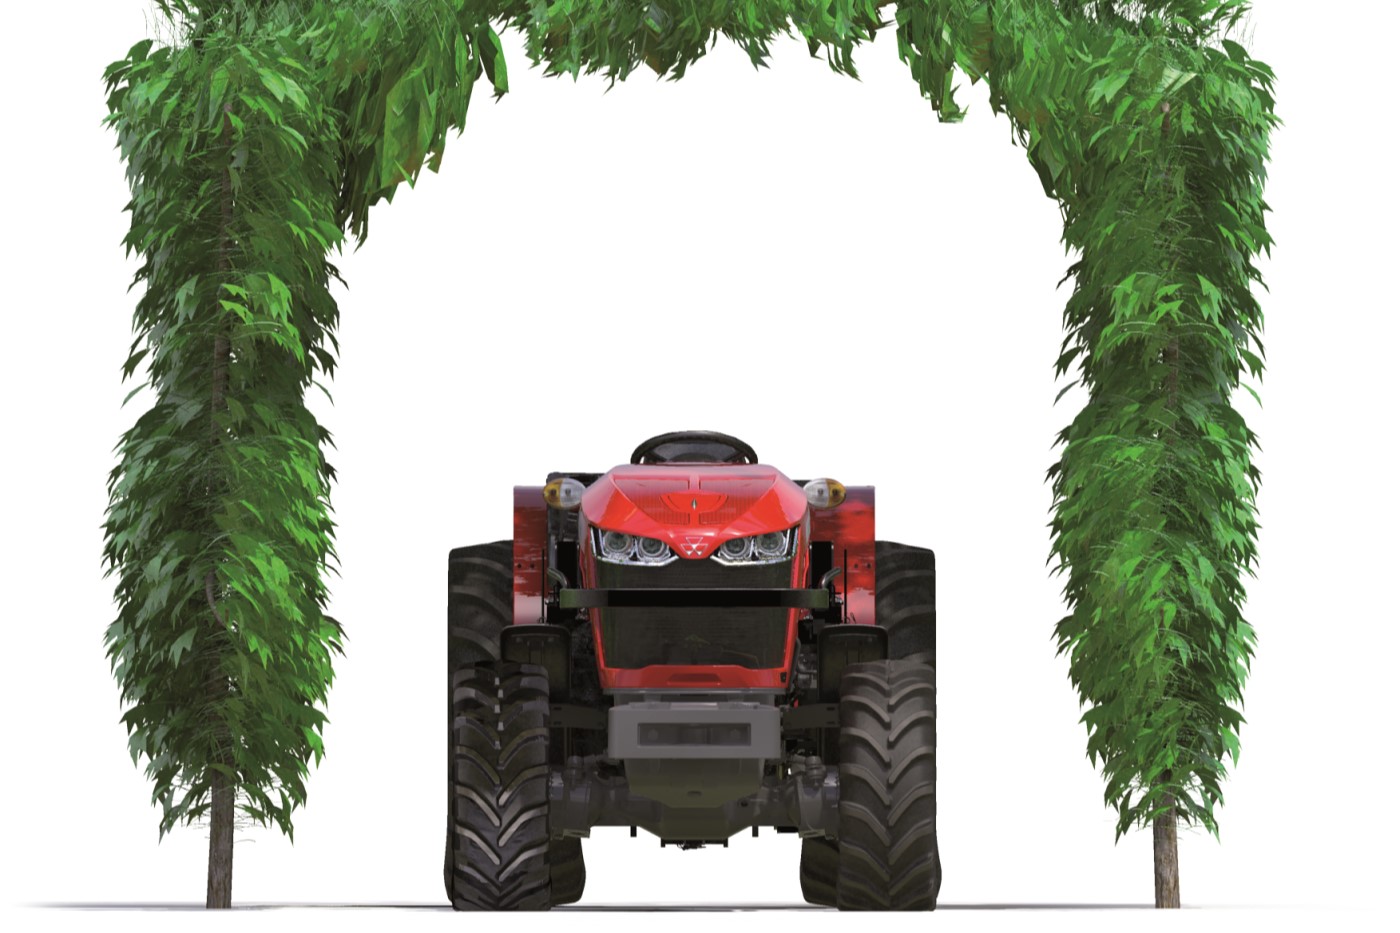 Sällsynt Massey Ferguson-traktor 